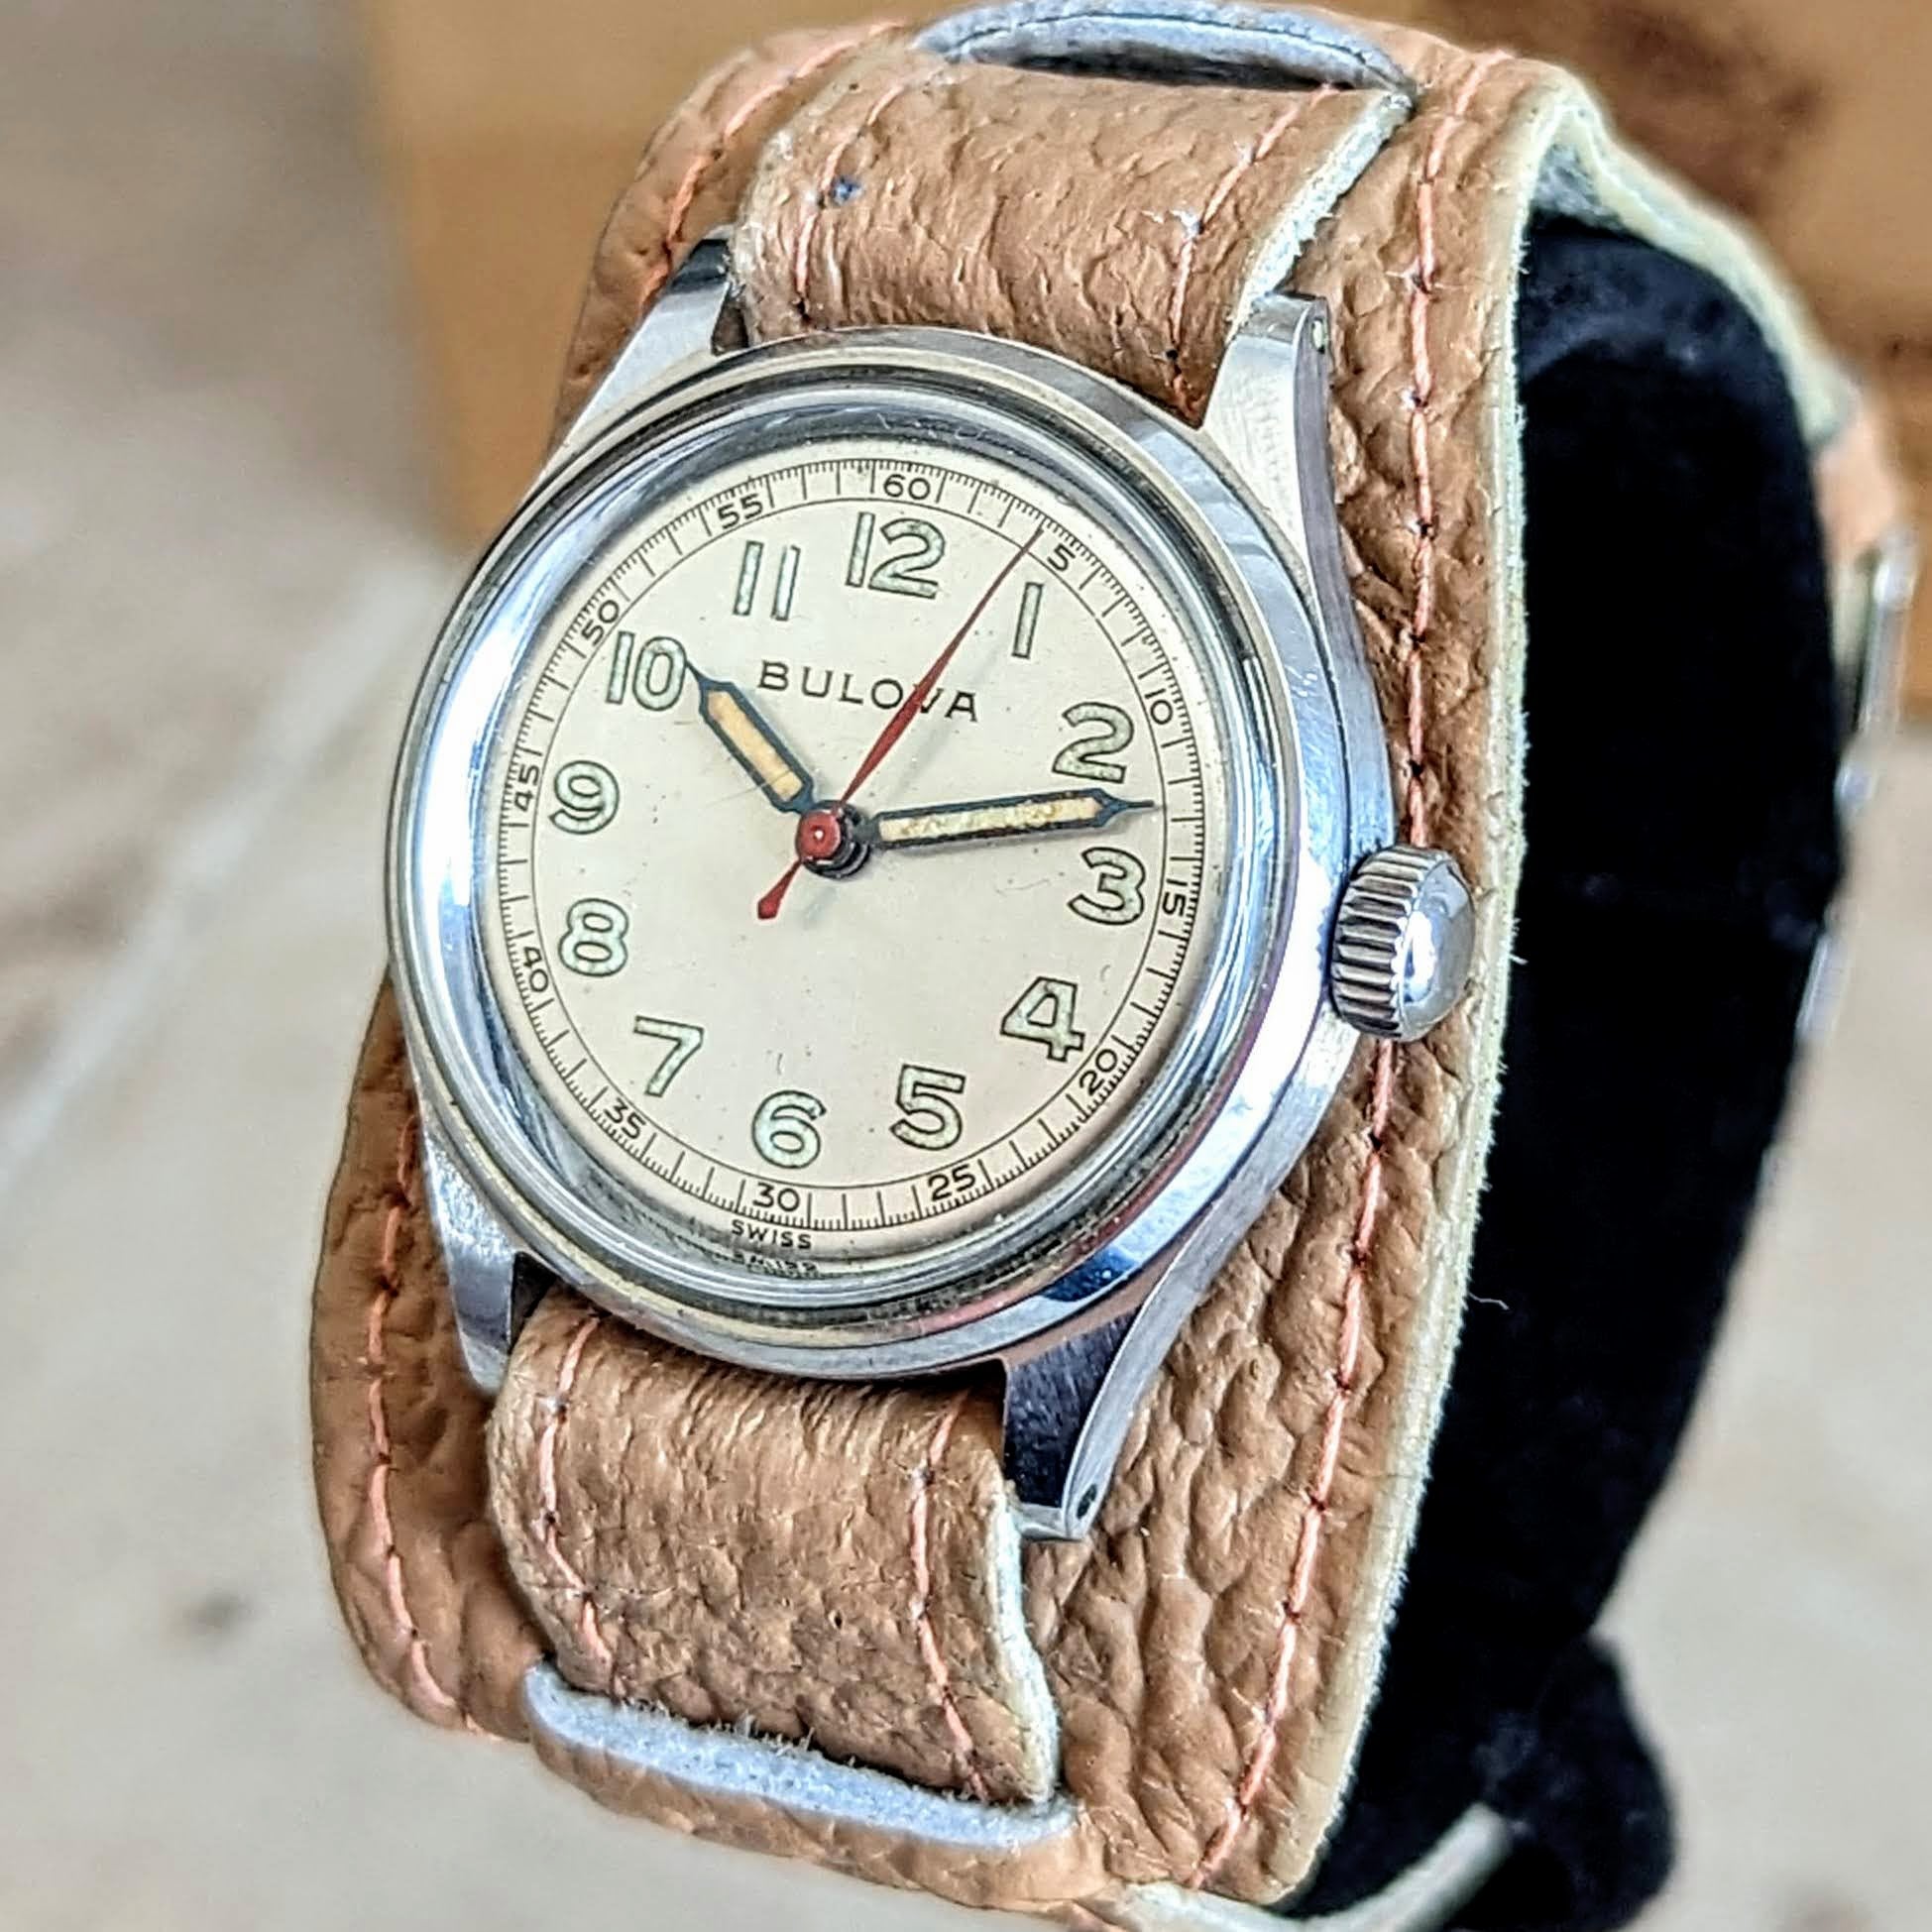 1944 BULOVA Watertite Service Wristwatch 17 Jewels Swiss Made Watch